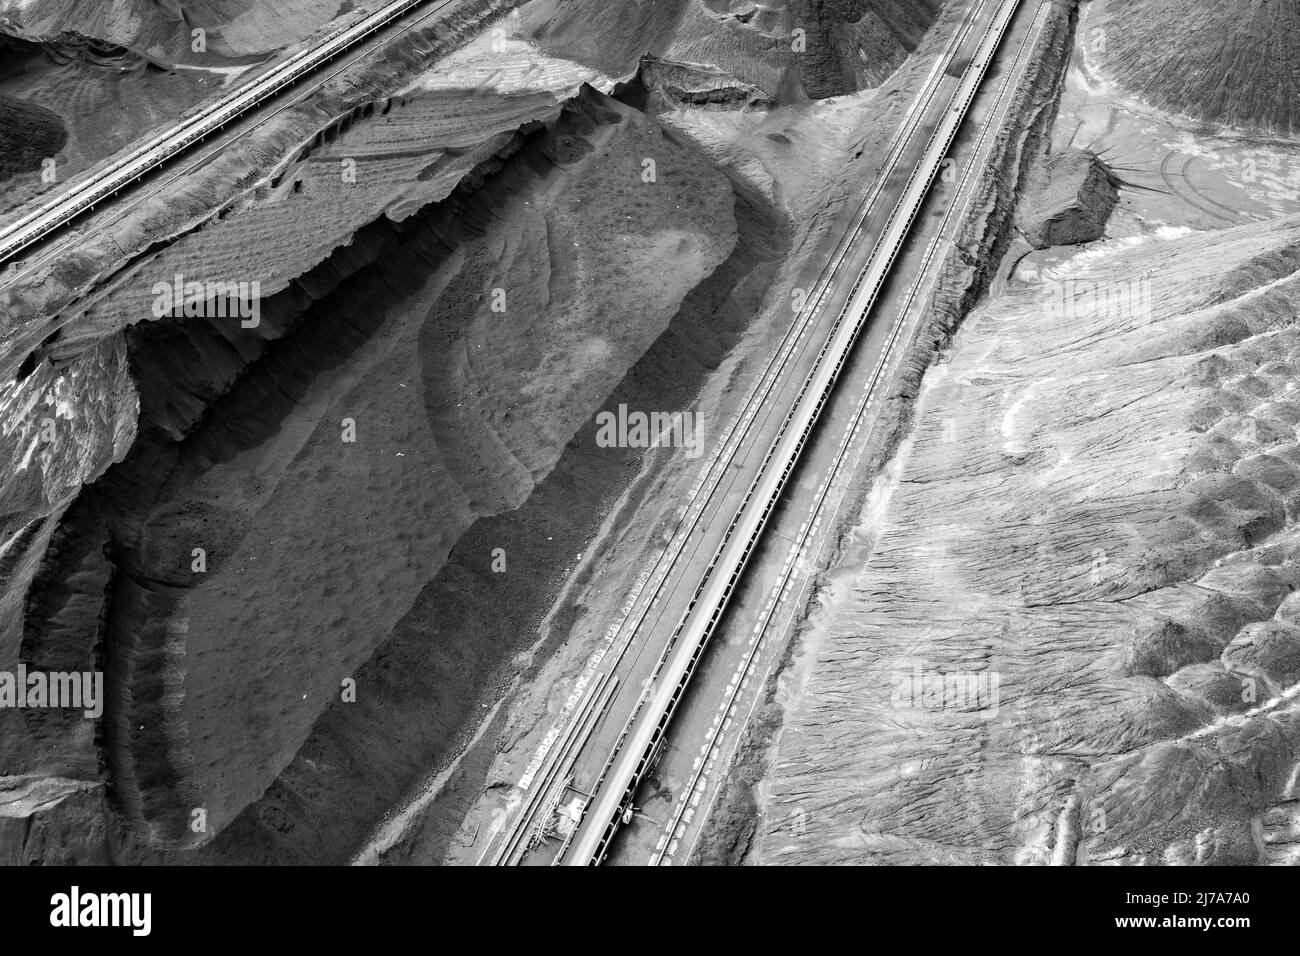 Vista aerea della miniera di carbone. Industria estrattiva per carbone nero, drone aereo vista dall'alto. Foto Stock